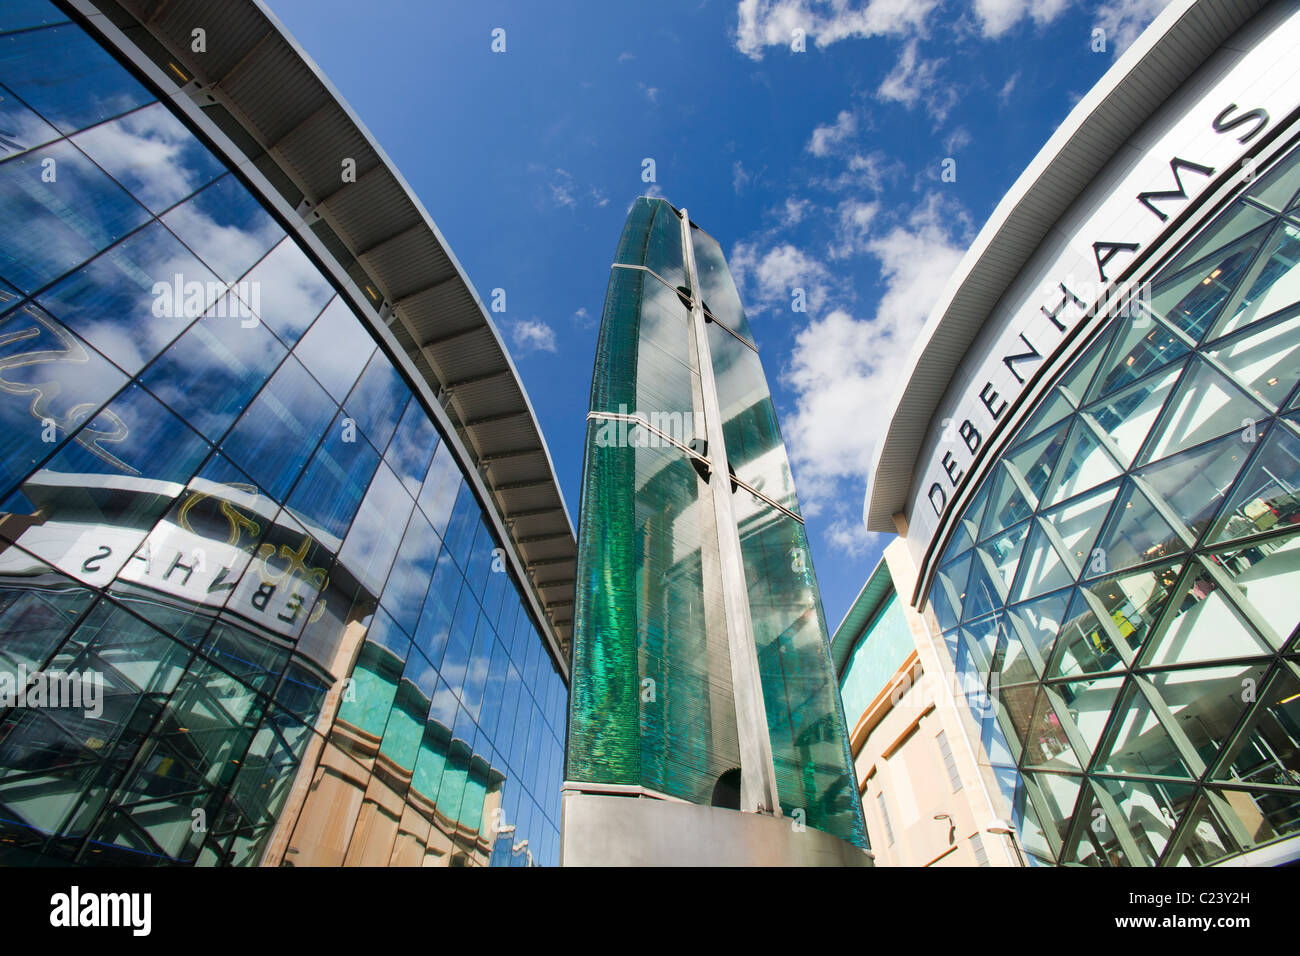 Danny Lane 'ellissi eclissi' sculture in vetro nel centro cittadino di Newcastle, Tyneside, Regno Unito. Foto Stock